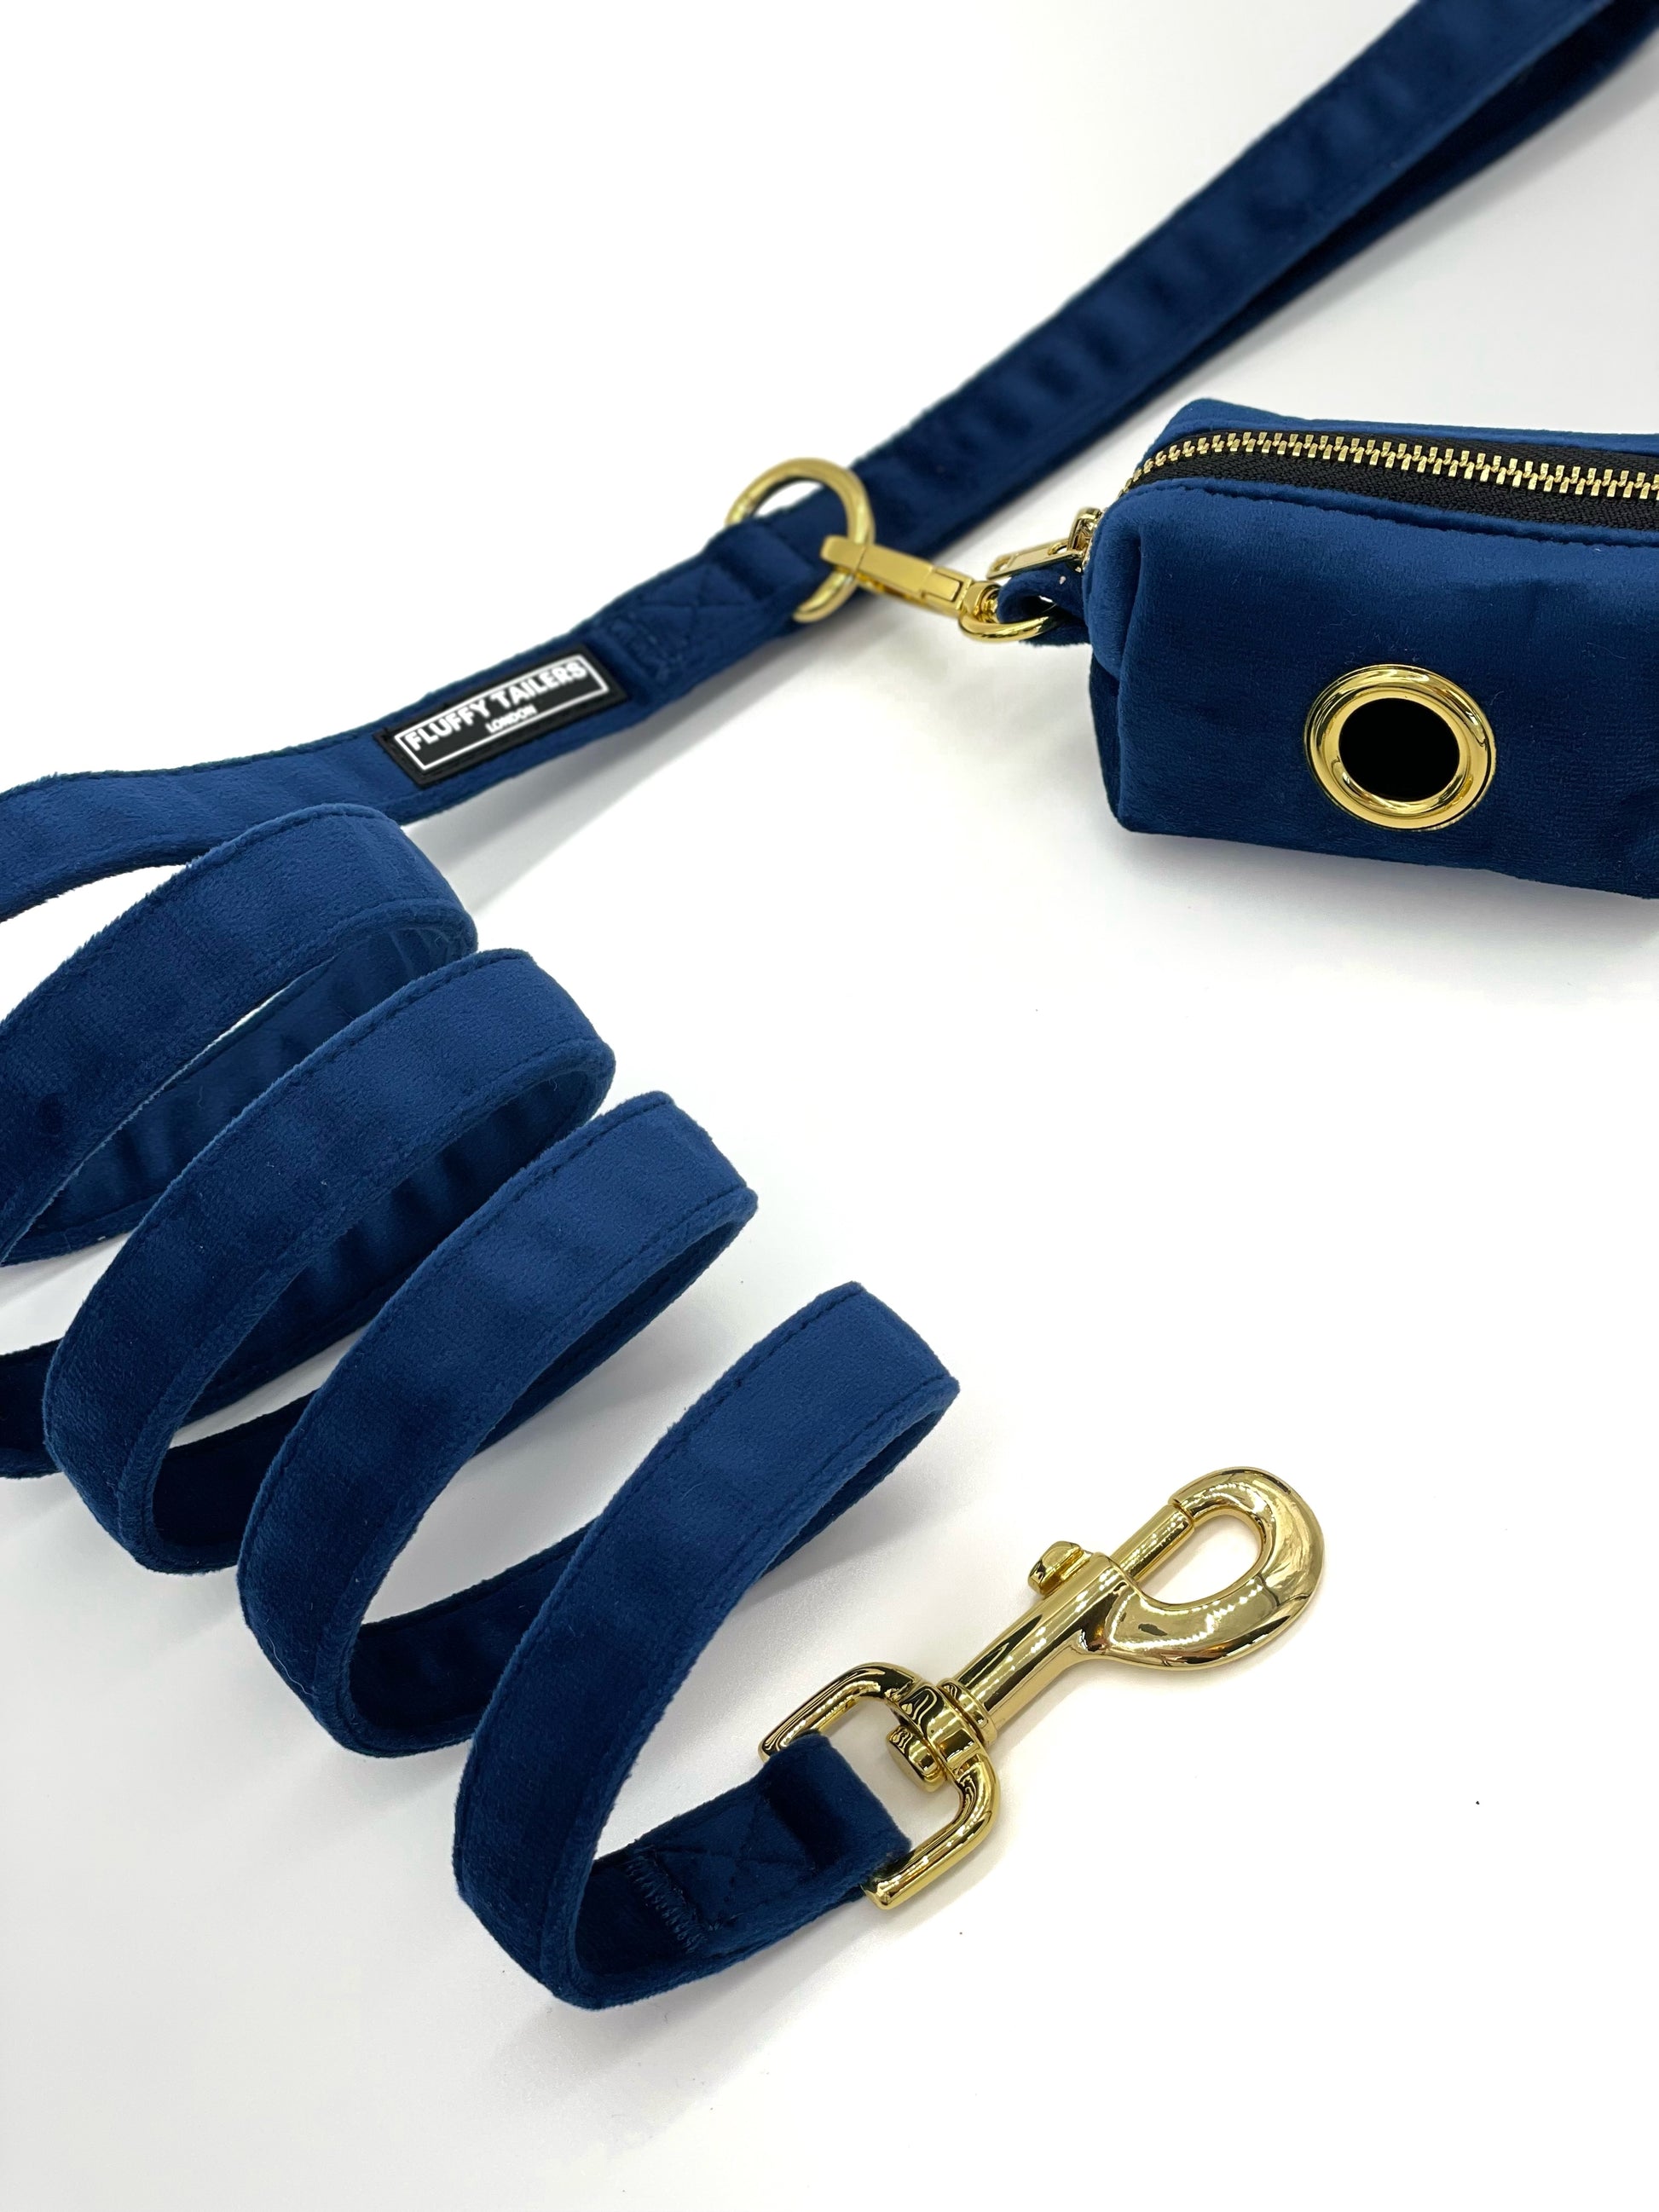 Luxury Royal Blue Velvet Dog Harness